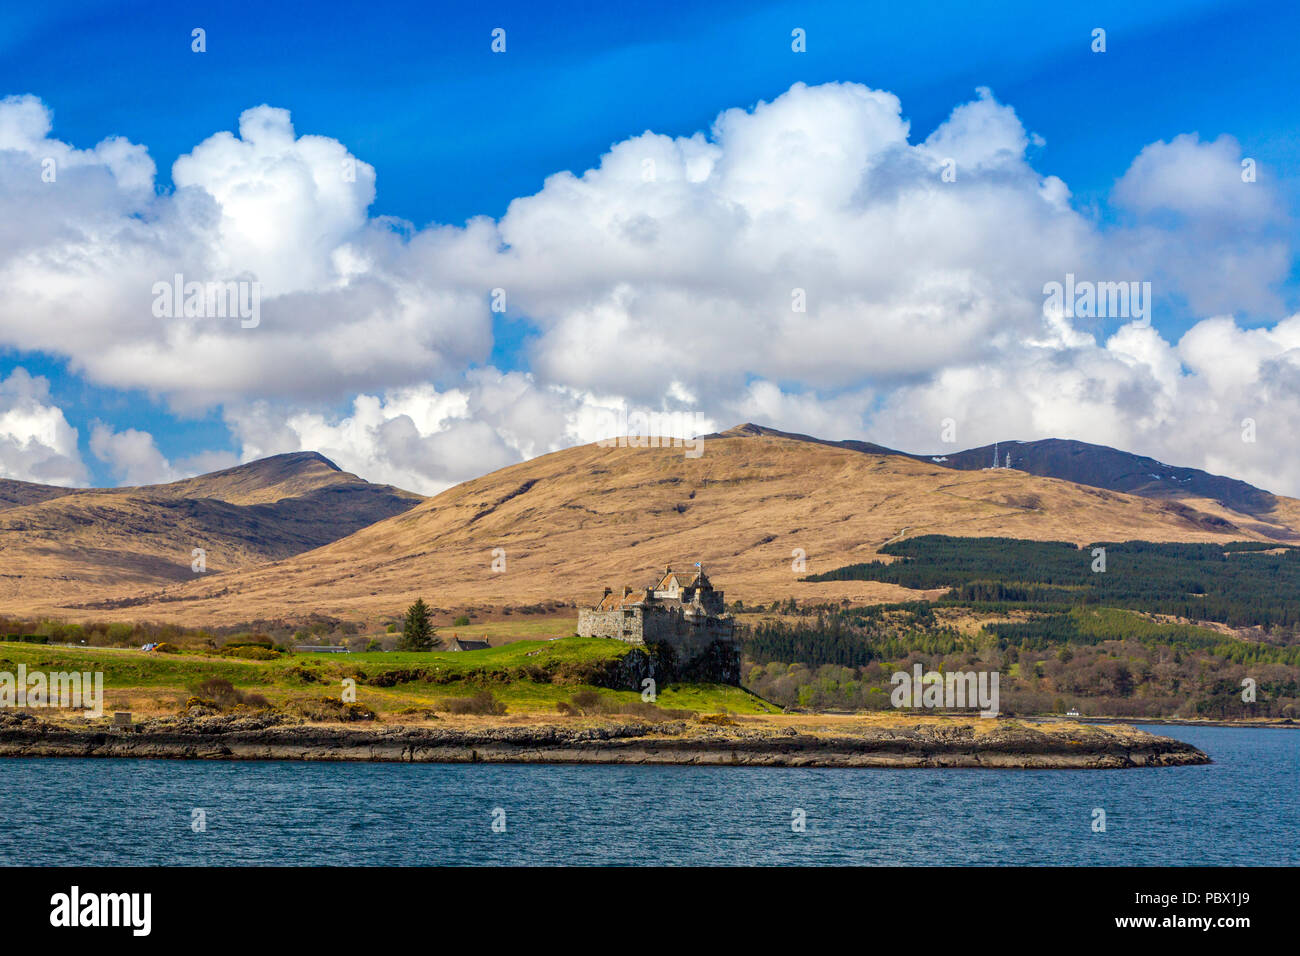 Historische Duart Castle steht auf einem prominenten Ort mit Blick auf den Sound of Mull auf der Isle of Mull, Argyll und Bute, Schottland, Großbritannien Stockfoto